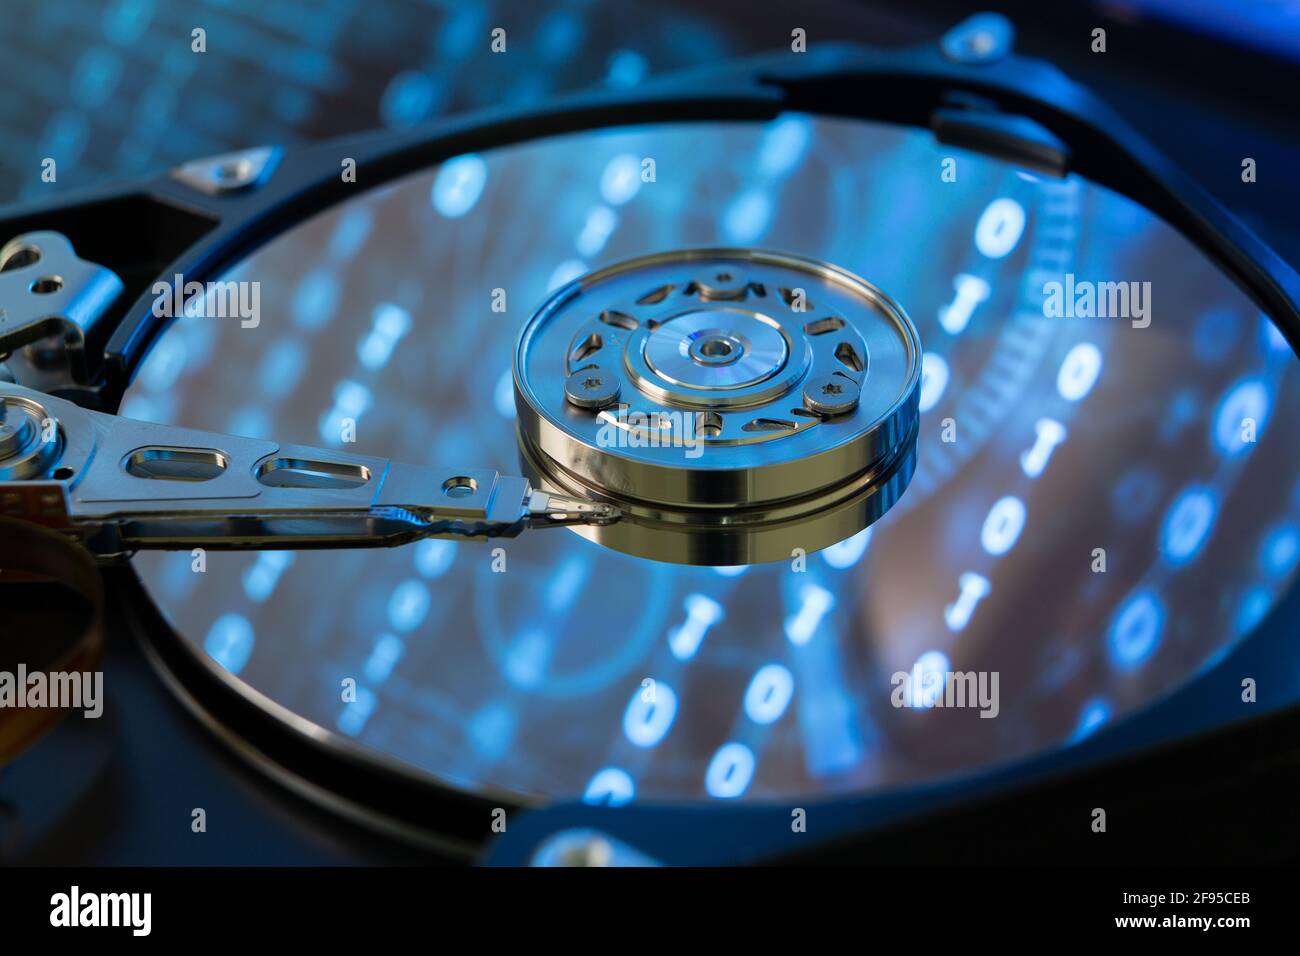 All'interno di un disco rigido HDD con codice binario, zeri e uno, proiettato sulla superficie. Aspetto bluastro. Foto Stock